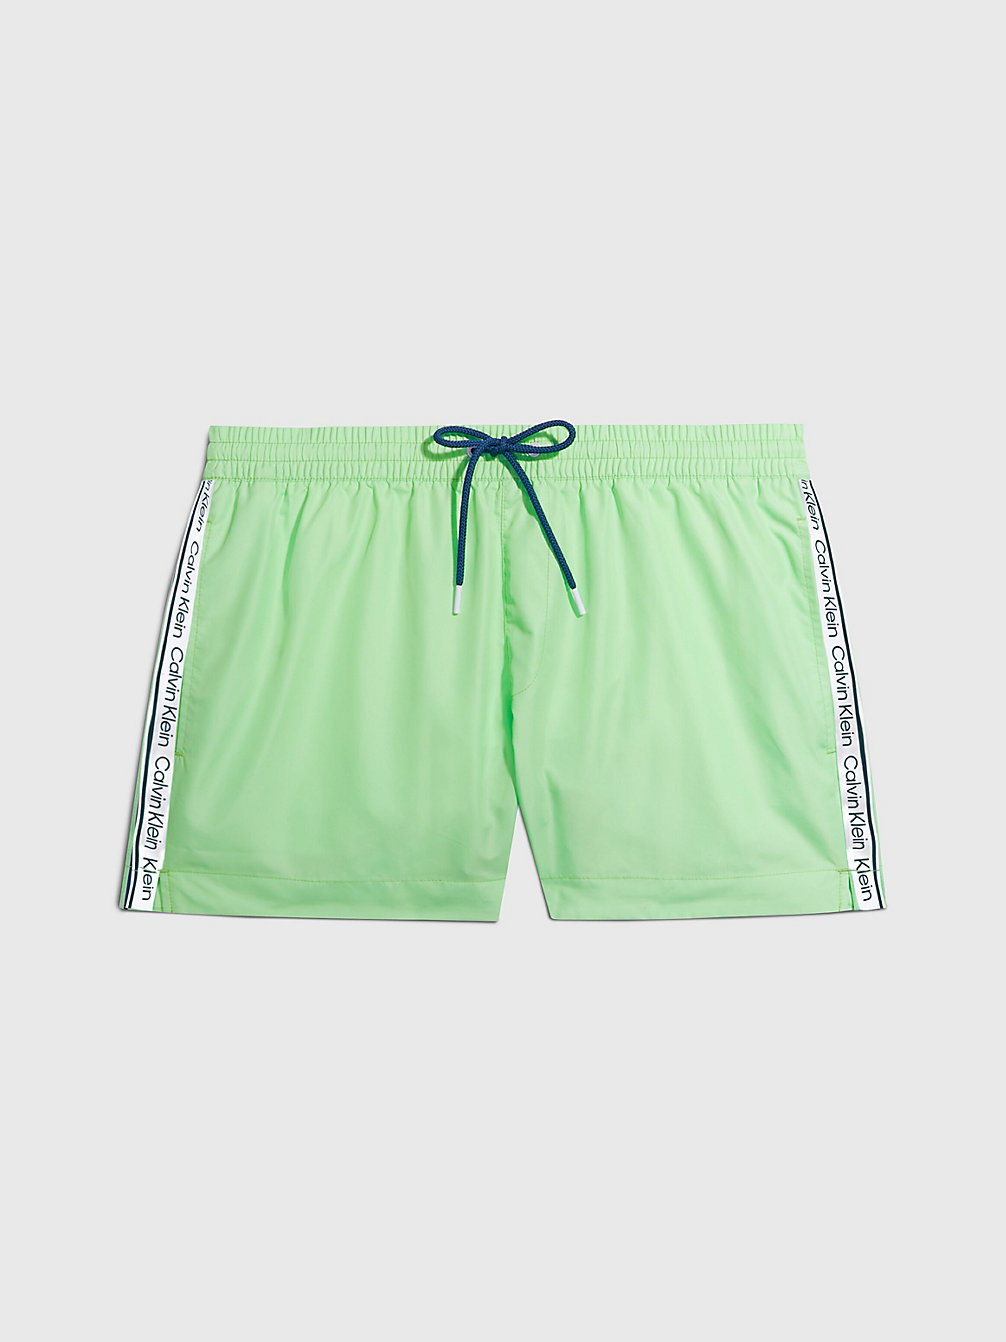 LIME MIST Short Drawstring Swim Shorts - Logo Tape undefined men Calvin Klein